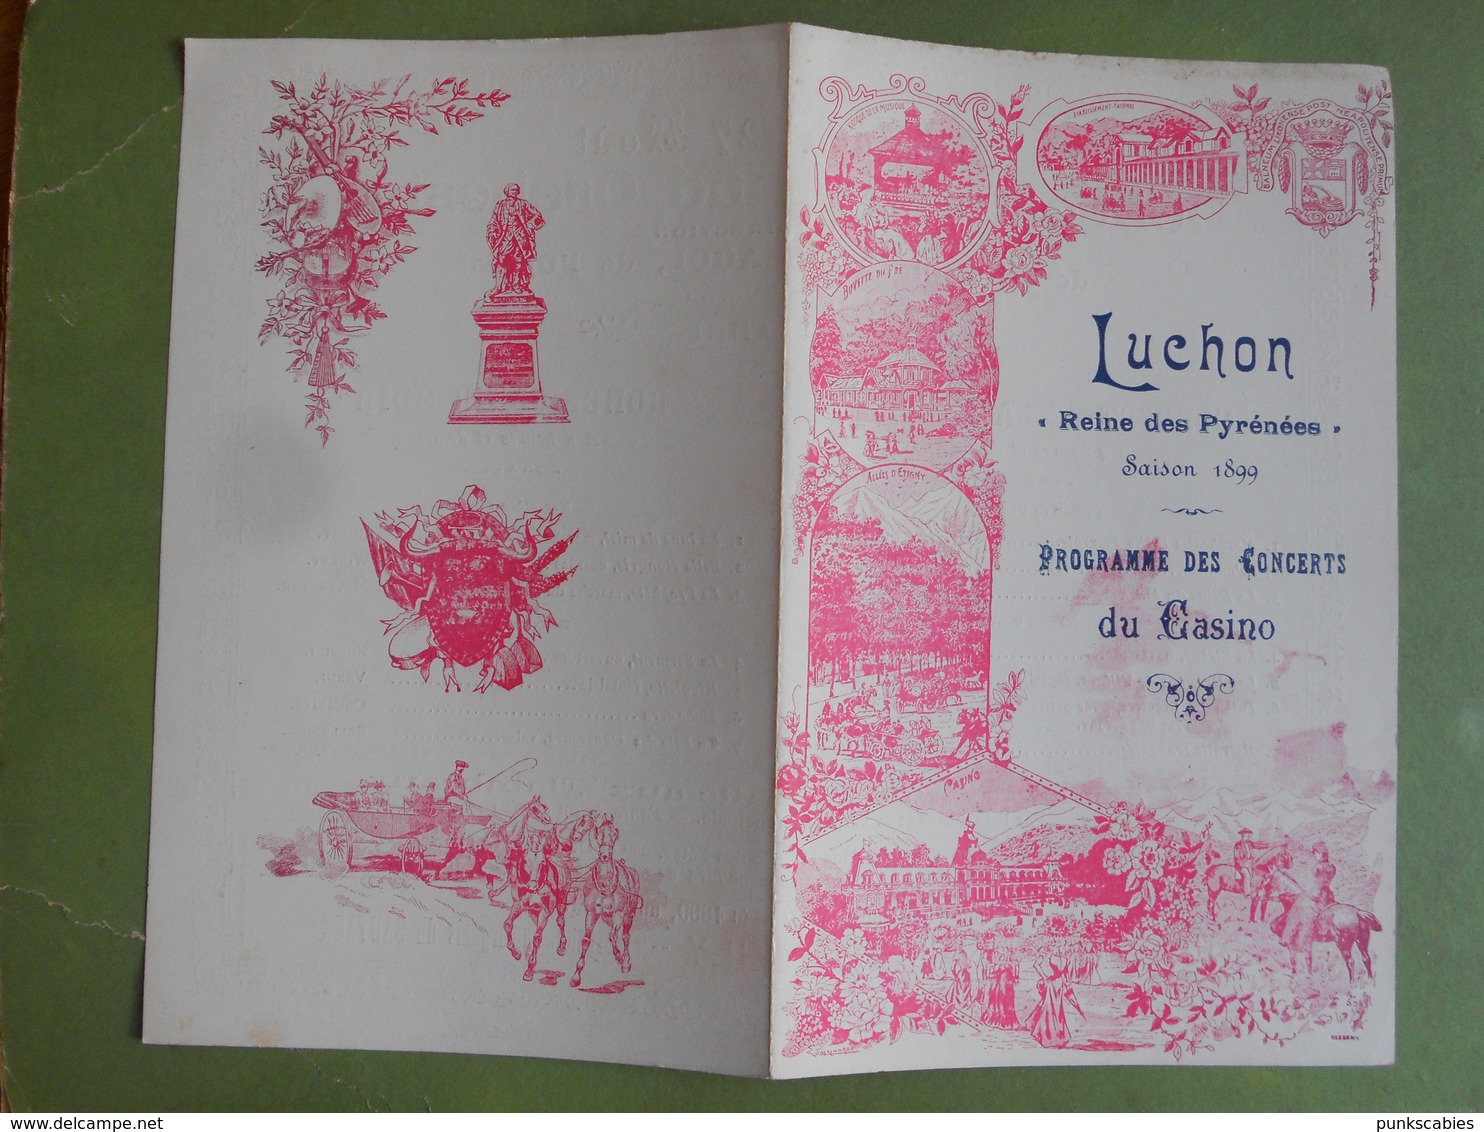 PROGRAMME DES CONCERTS A GRAND ORCHESTRE DE LUCHON DIMANCHE 27 AOUT 1899 BON ETAT - Programmes